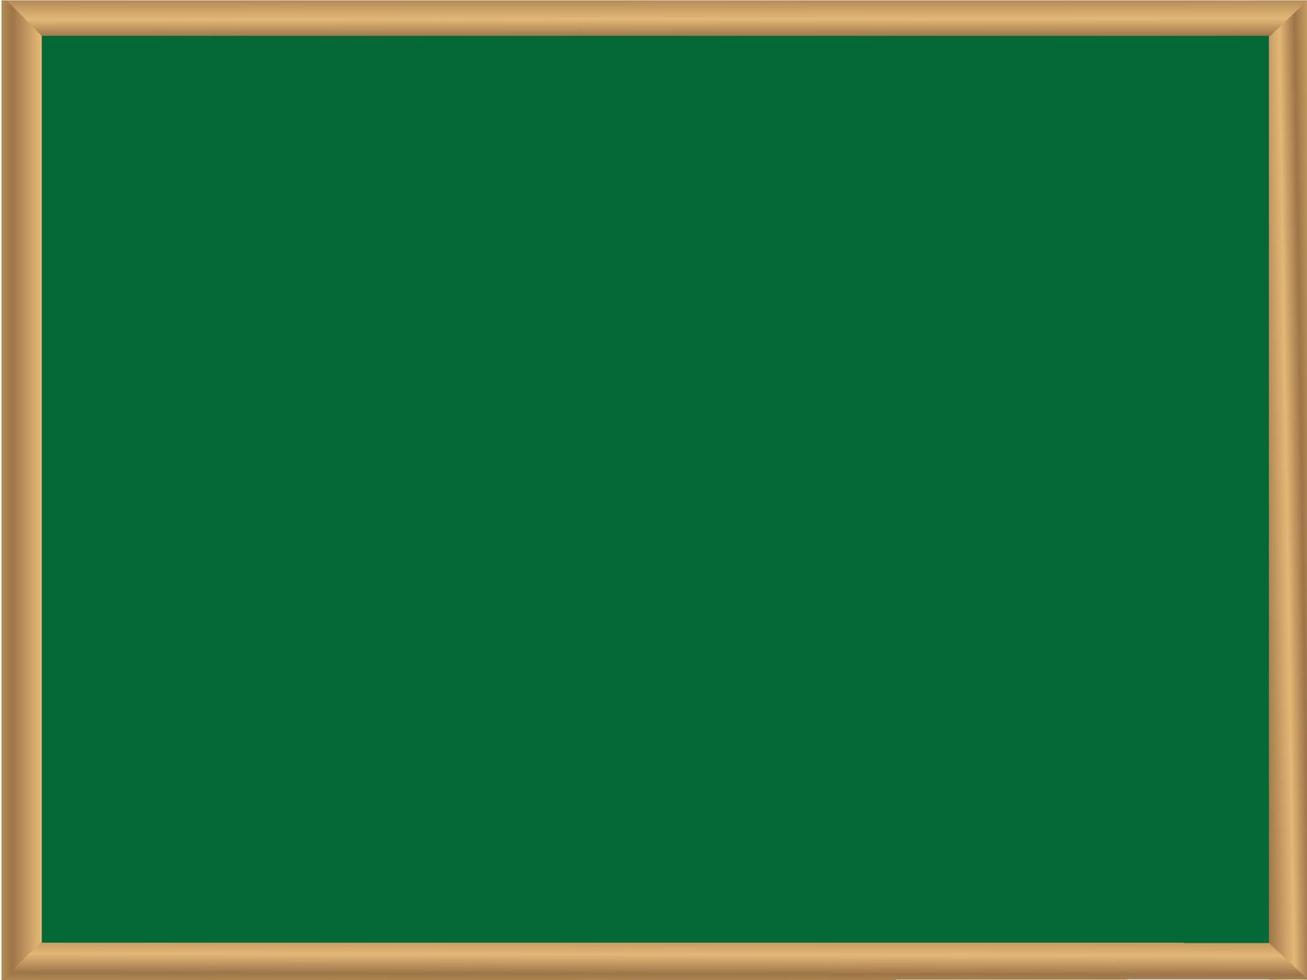 groen schoolbord met frame.schoolbord achtergrond met houten grens vector